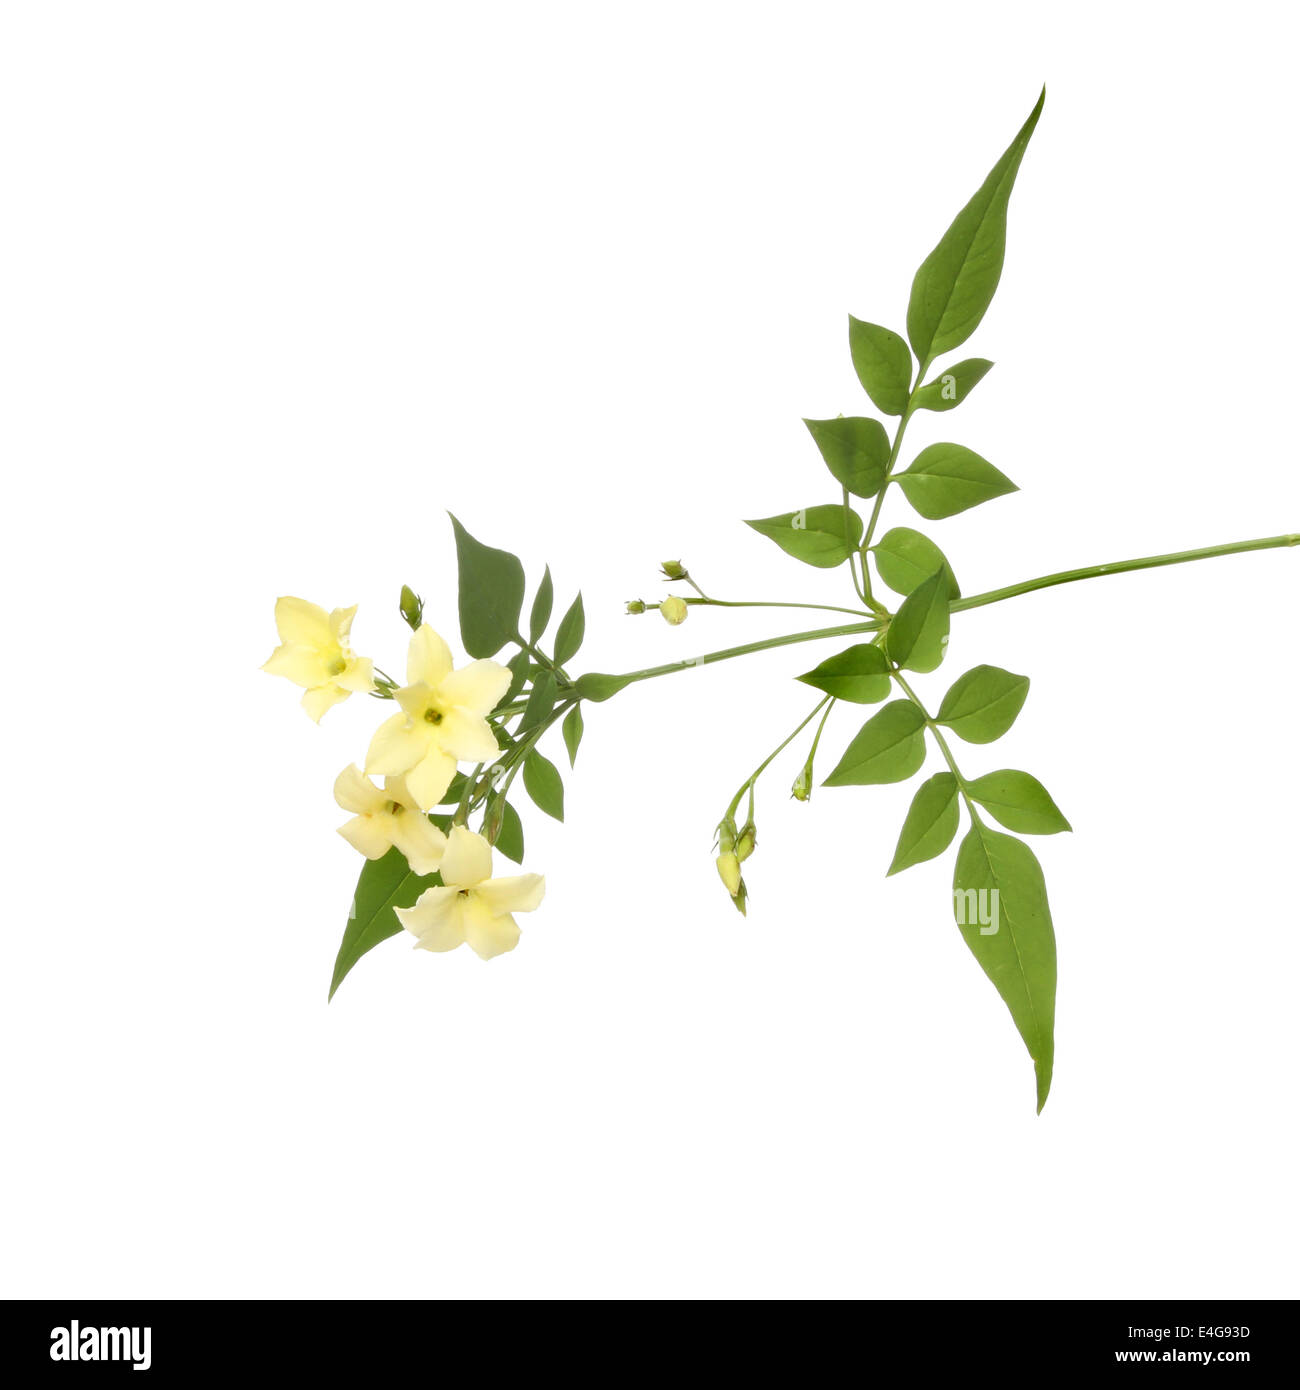 Crema de flores de jazmín y follaje aislado contra un blanco Foto de stock